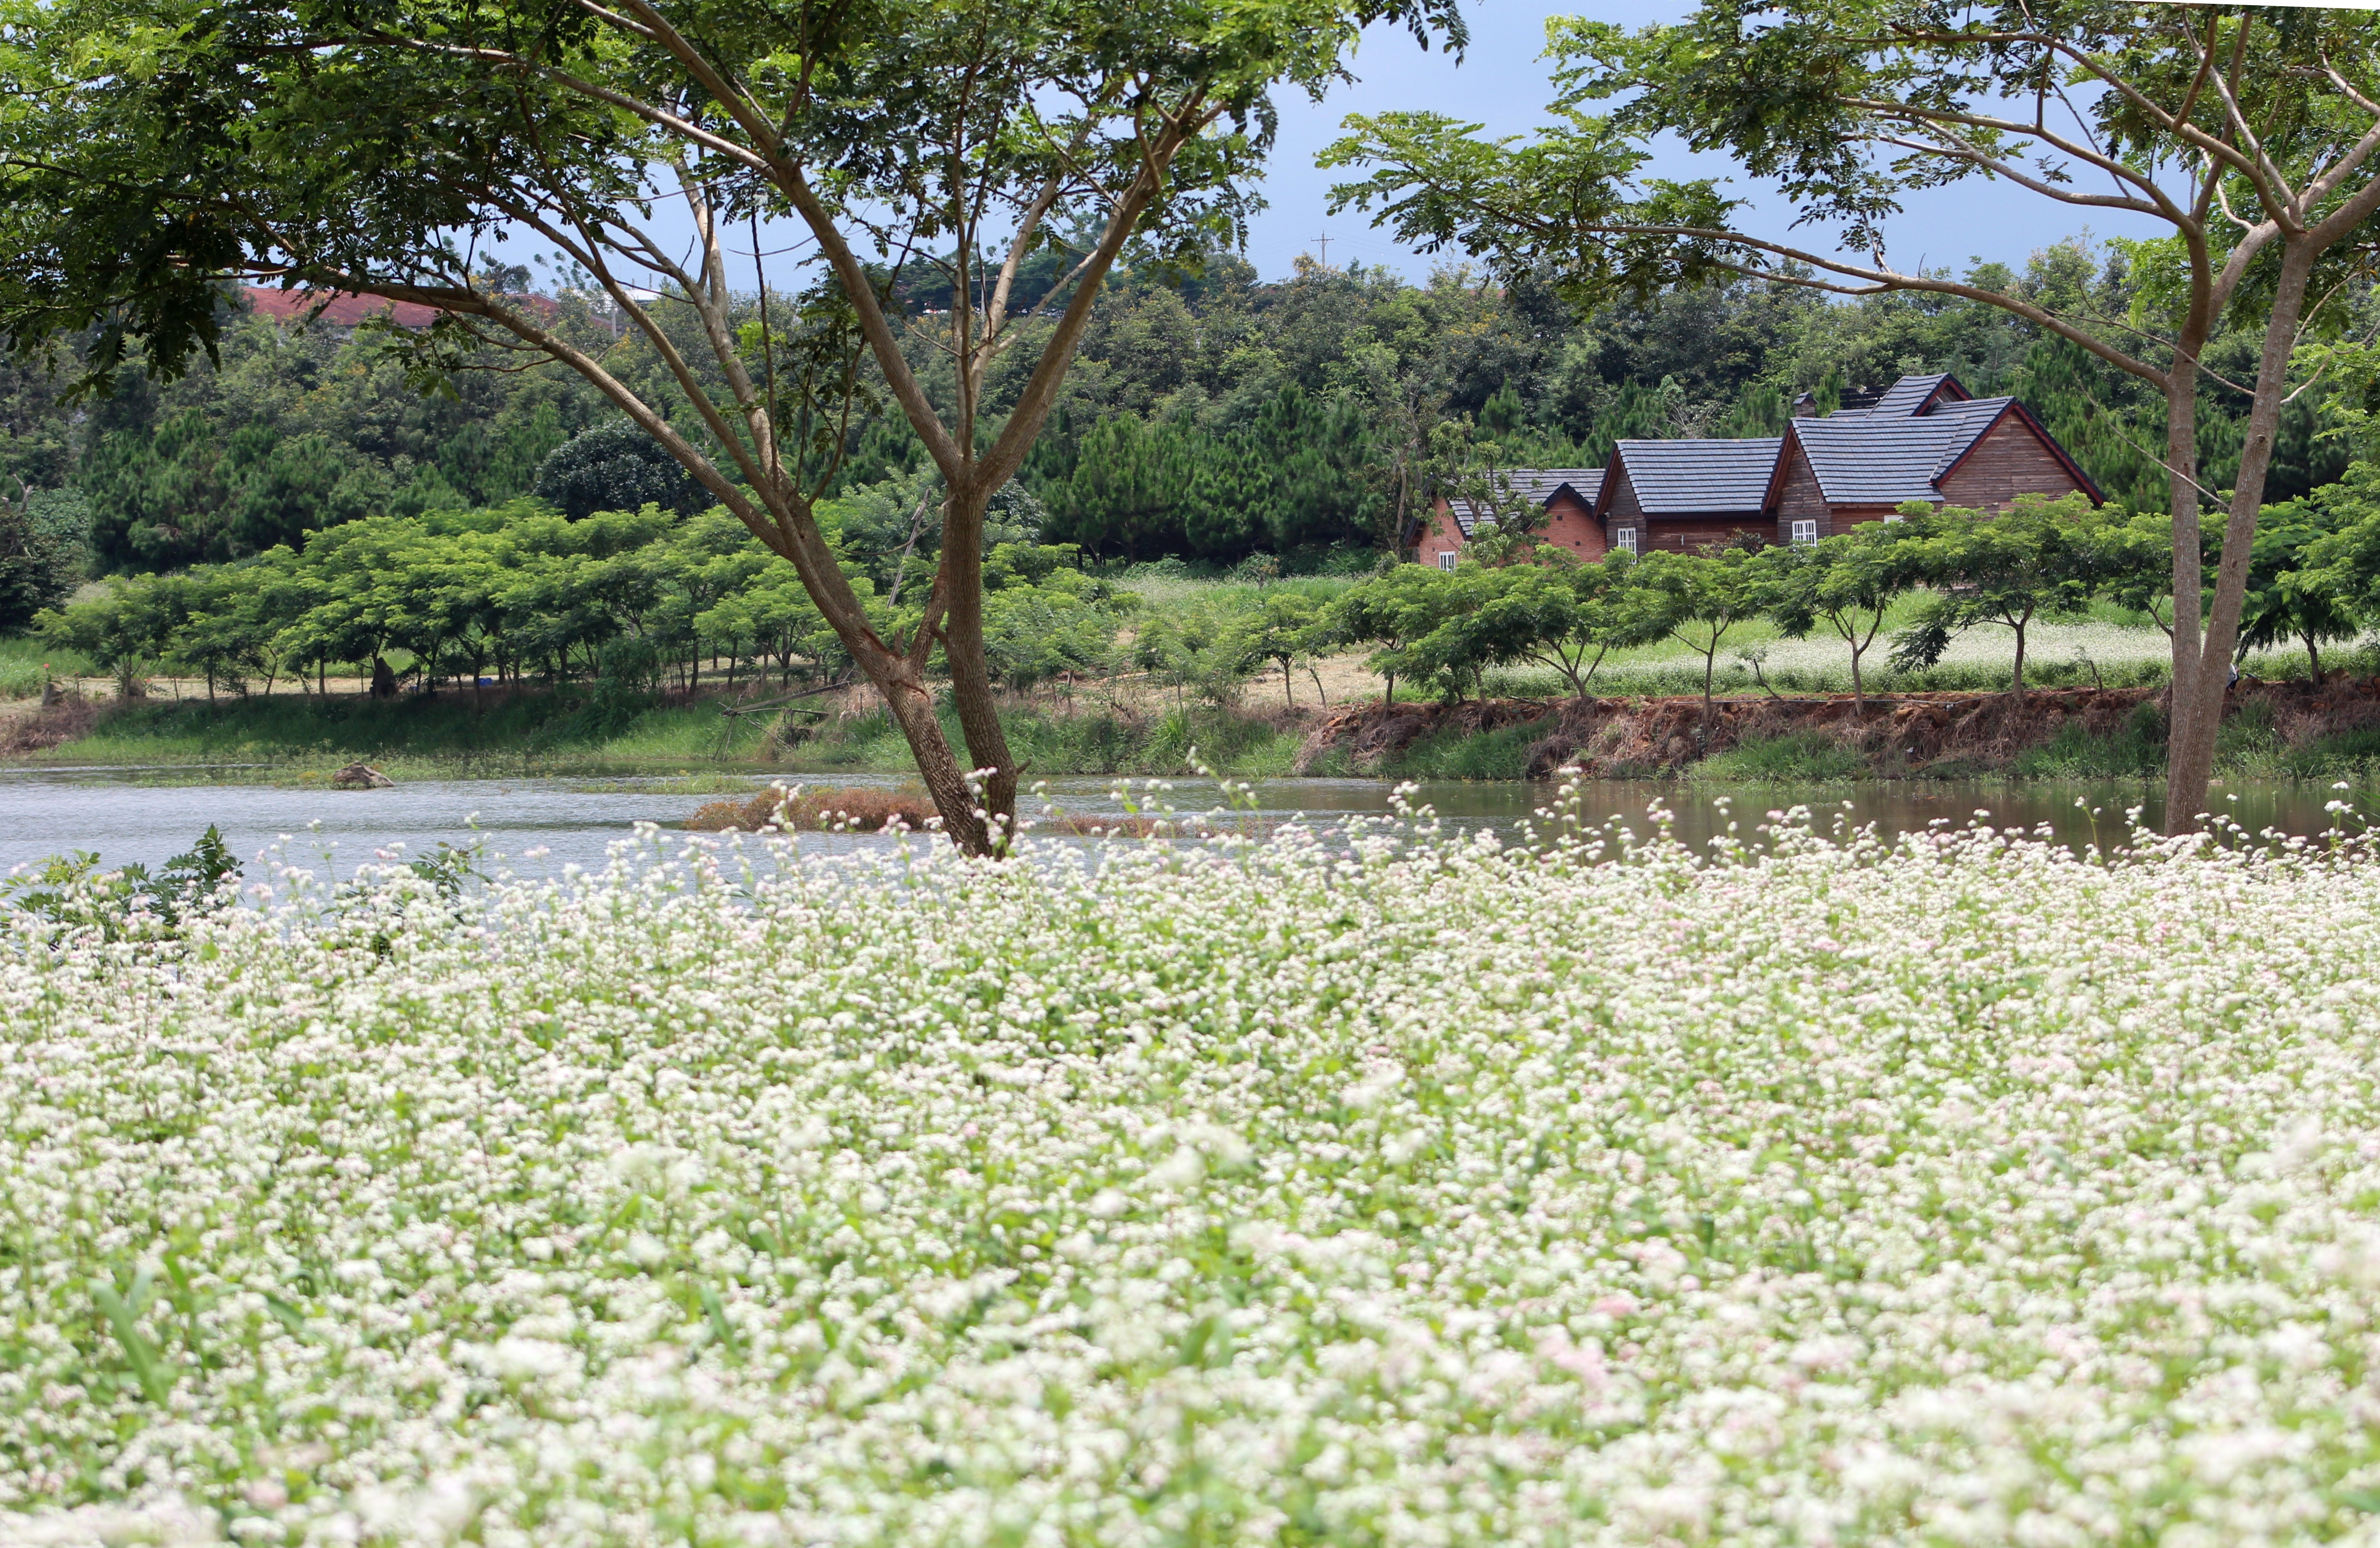 Hoa tam giác mạch nở rộ trên cao nguyên Lâm Đồng